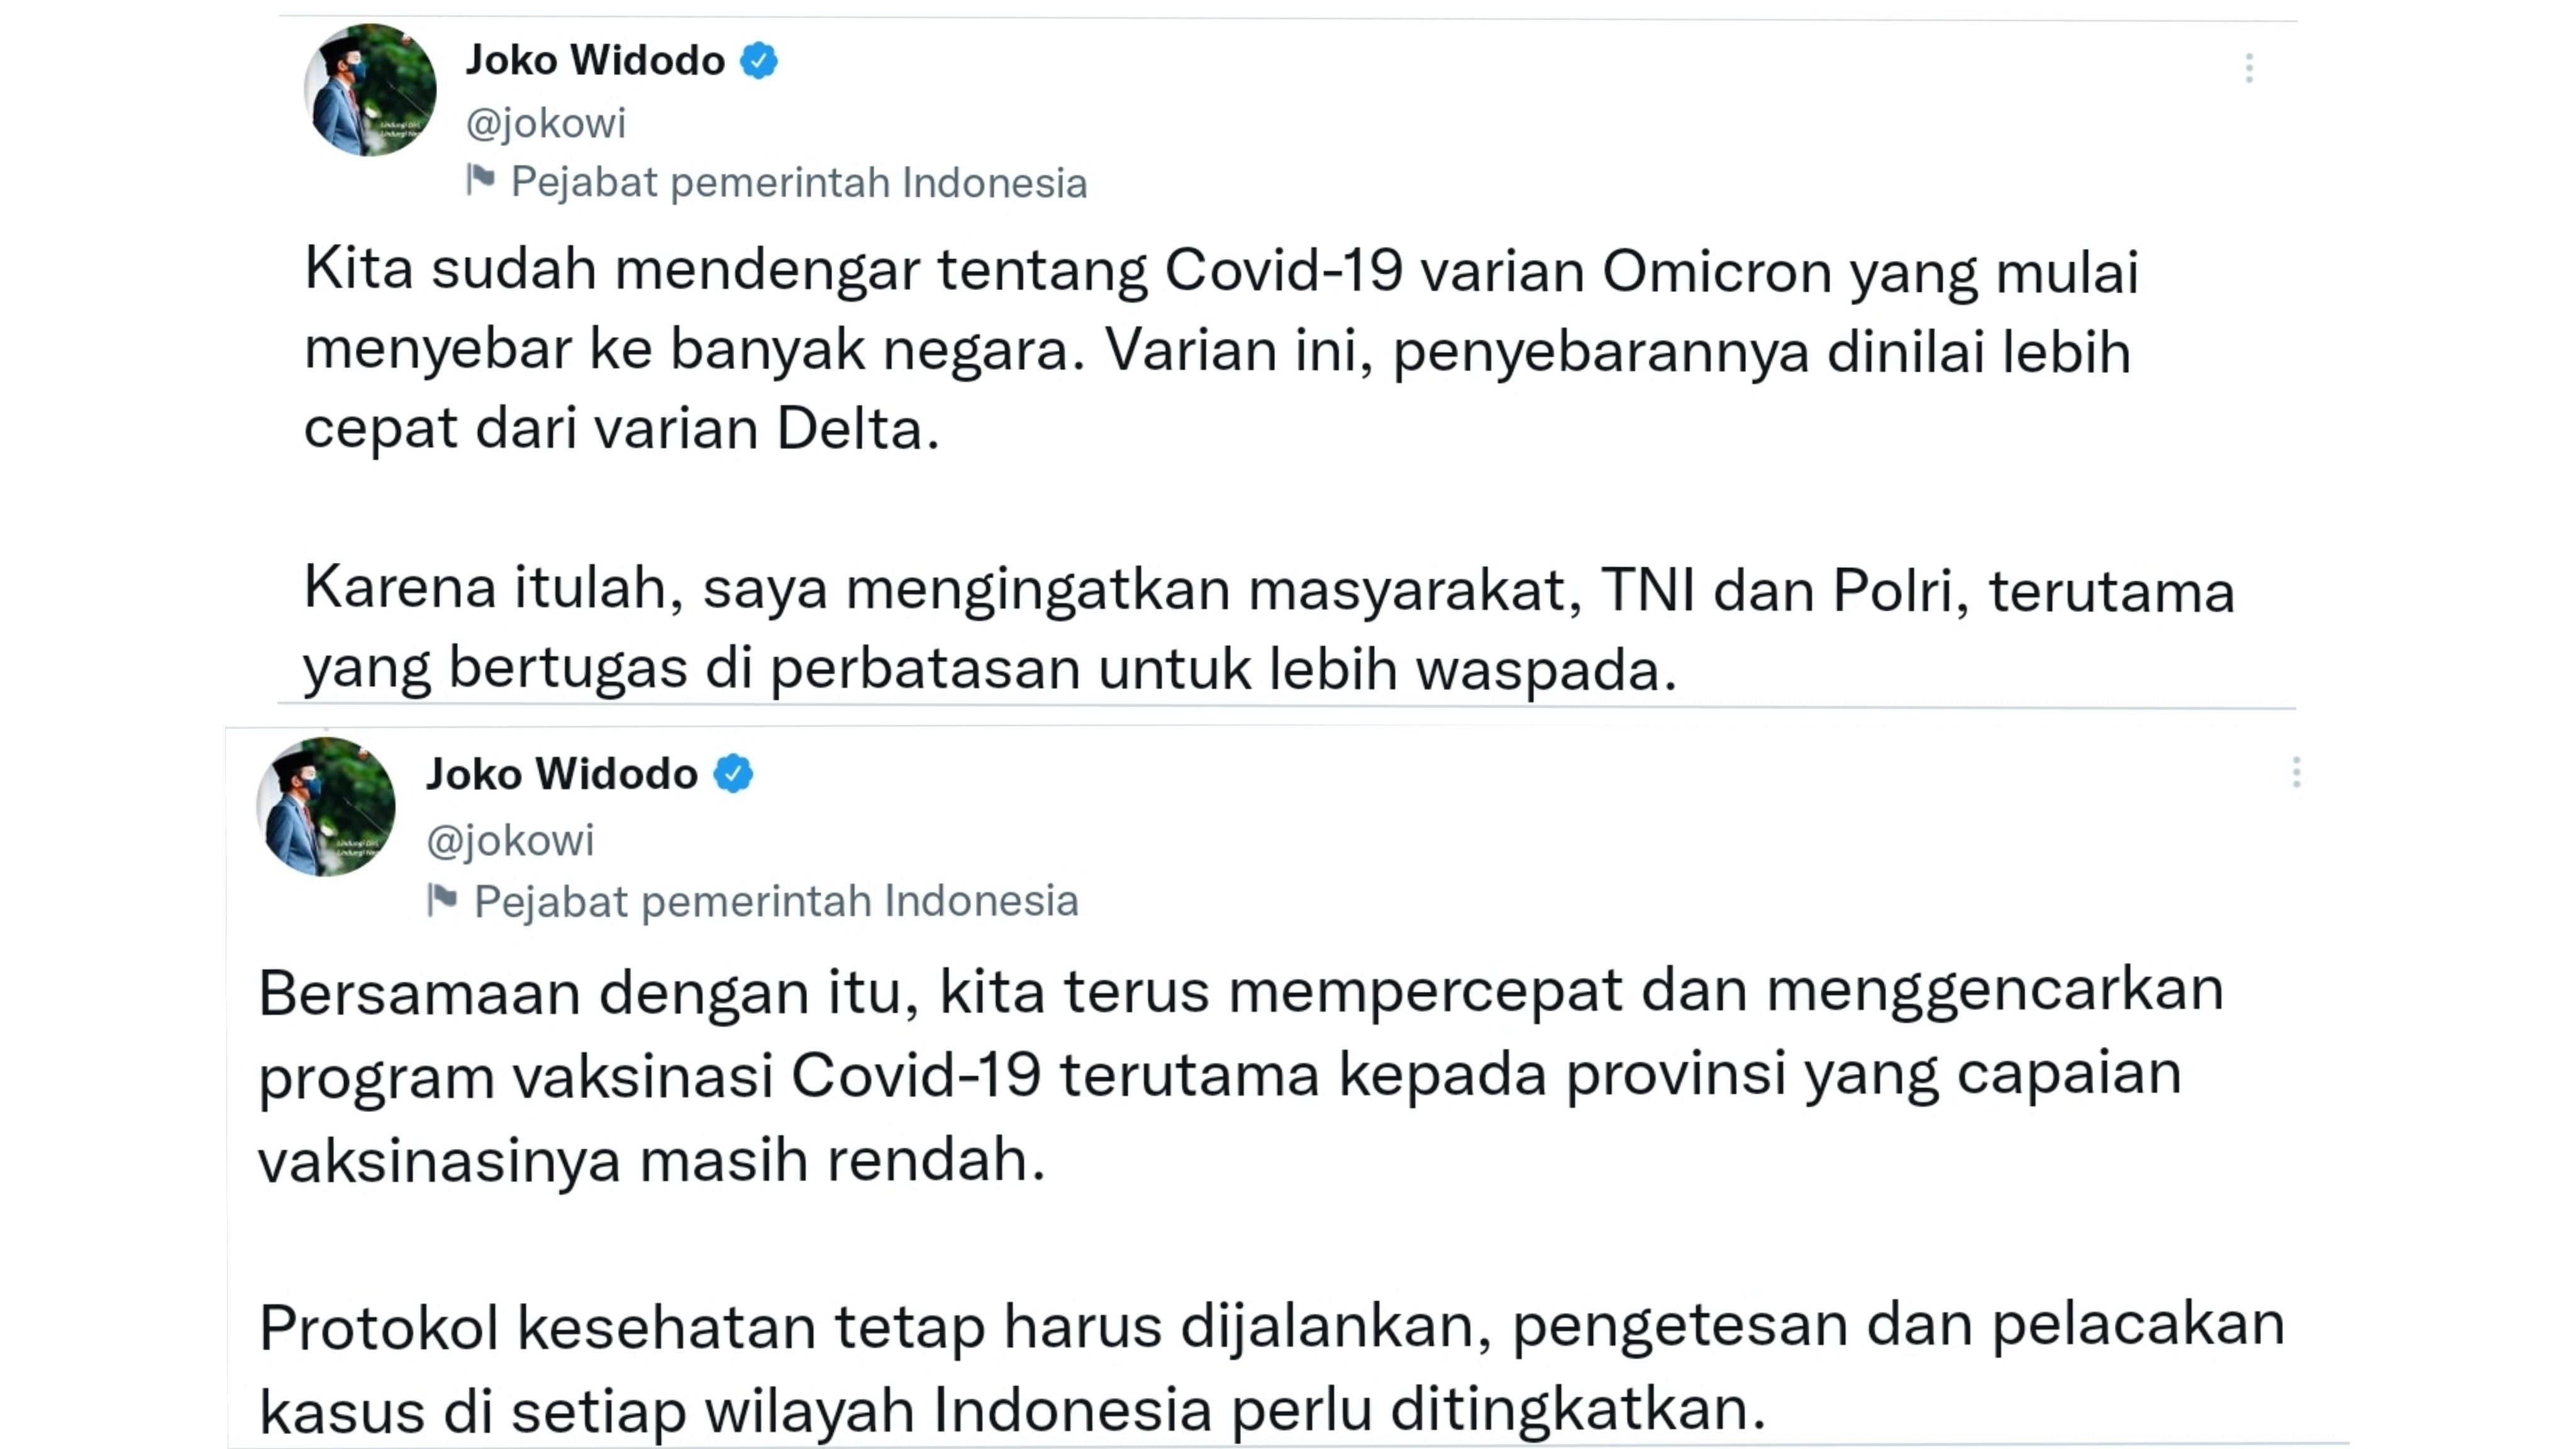 Presiden Joko Widodo (Jokowi) pun meminta agar semua pihak lebih waspada melihat varian Omicron Covid-19 lebih menular.